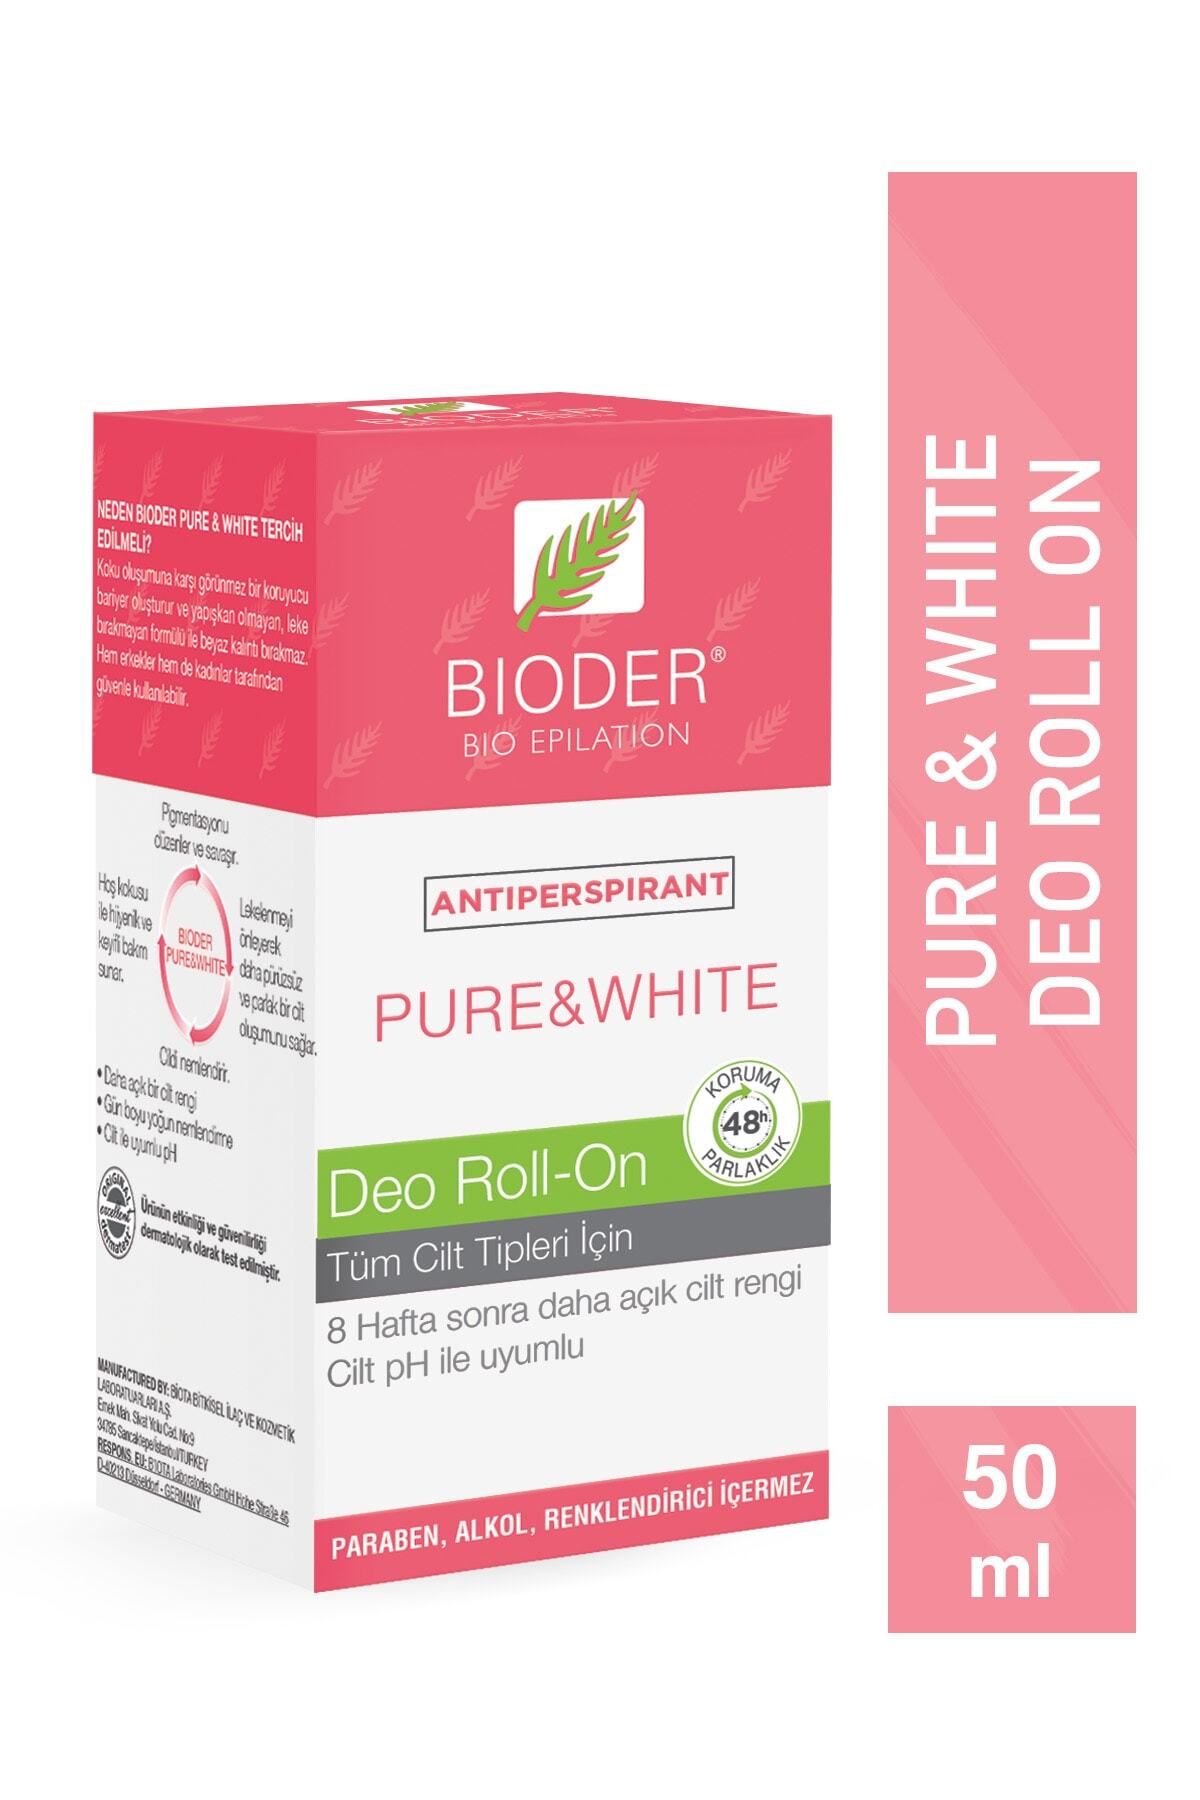 Bioder Pure & White Roll - On 50 ml Antiperspirant Terleme Önleyici - Kol Altı Beyazlatıcı Mucizevi Etki